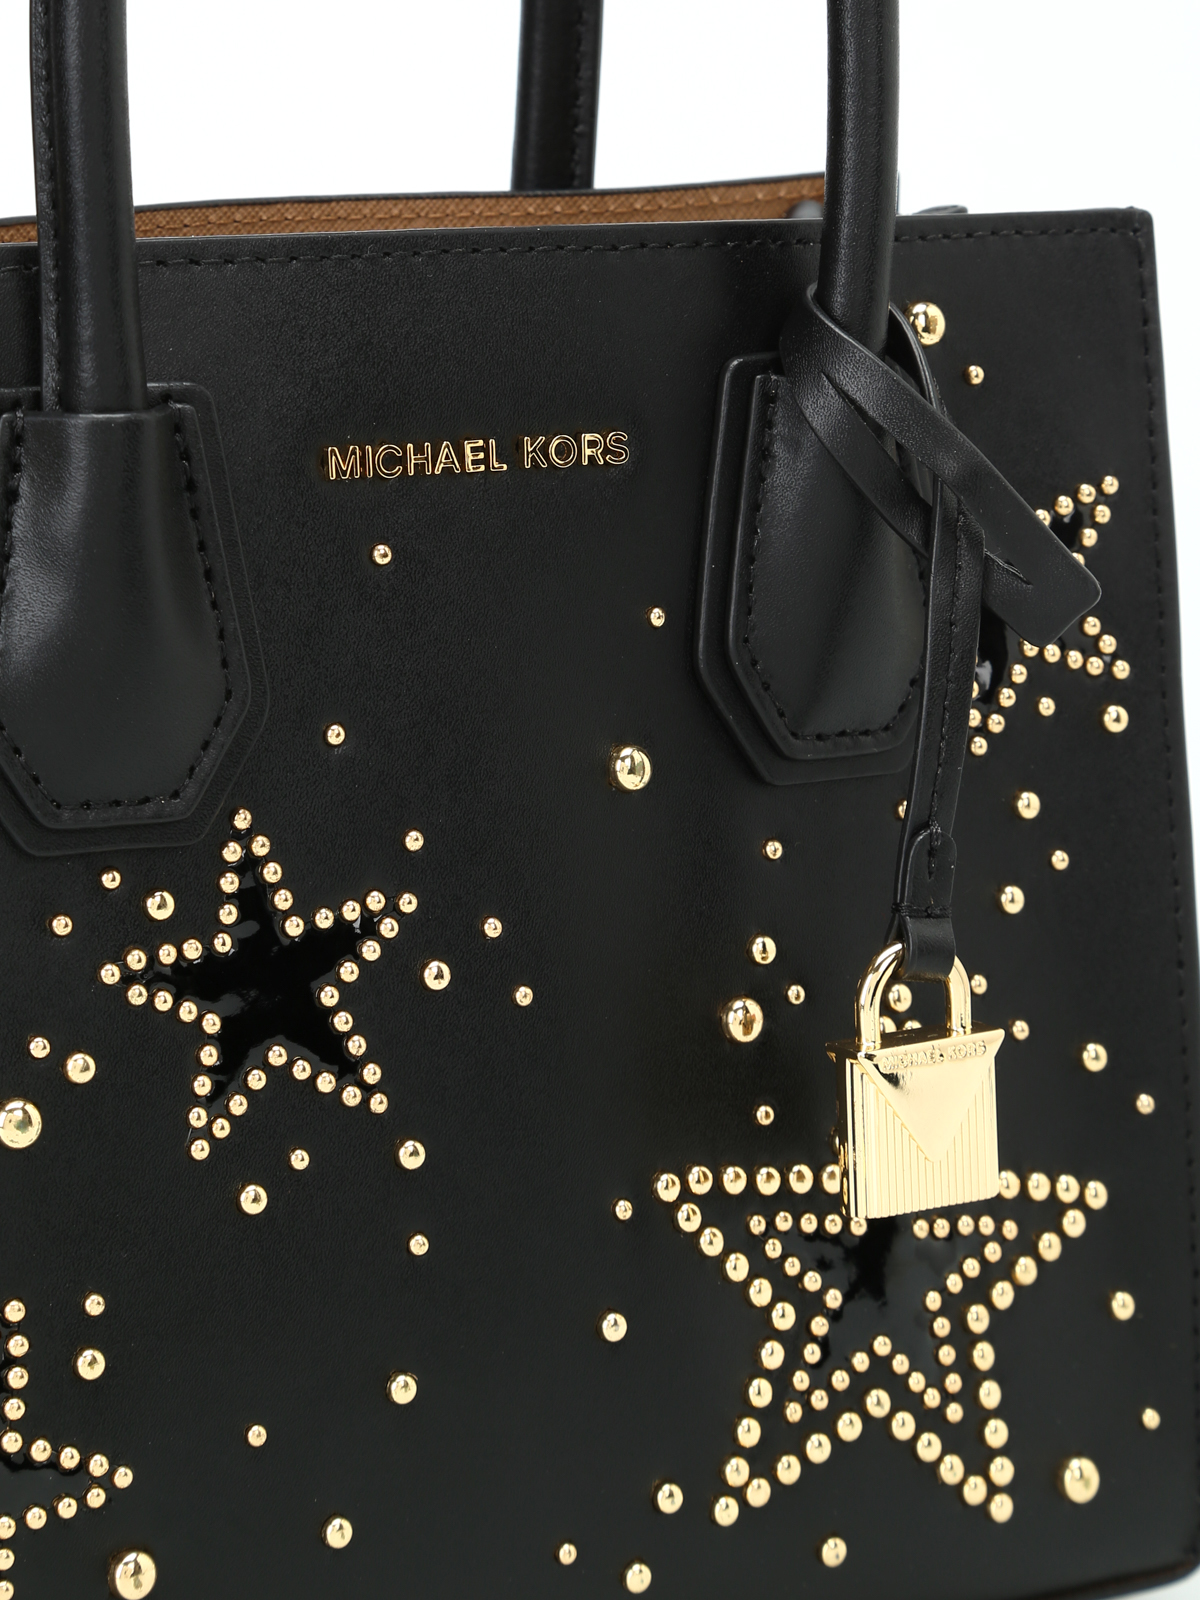 Cross body bags Michael Kors - Mercer M bag with studded stars -  30H7GM9M1I001